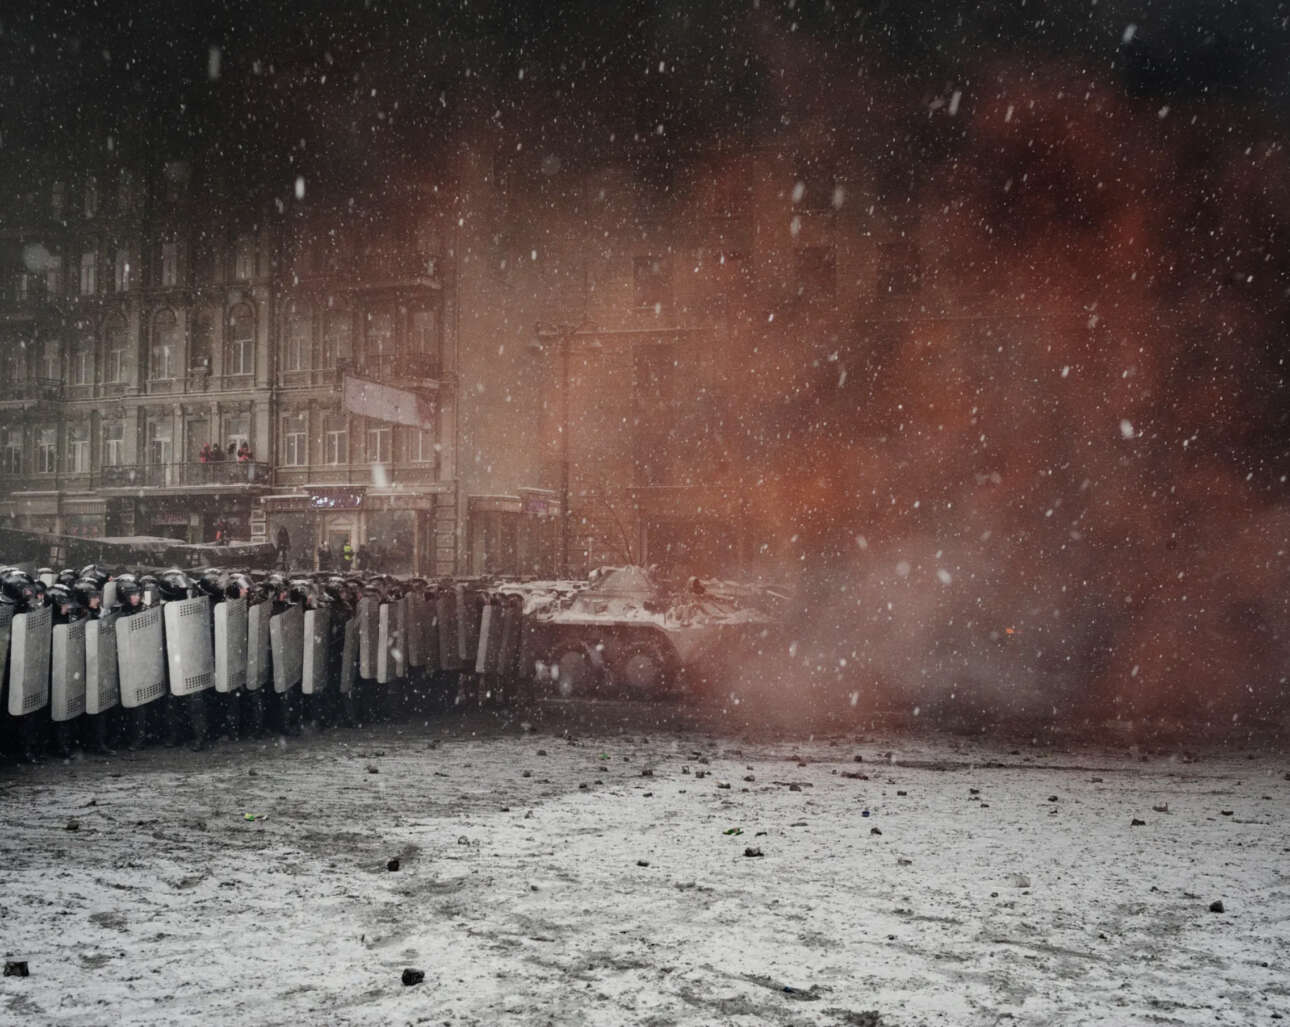 Νικητής στην κατηγορία Μακροχρόνια Πρότζεκτ, Ευρώπη. Οδός Hrushevskoho, Κίεβο, 22 Ιανουαρίου 2014: δεύτερη ημέρα βίαιων συγκρούσεων μεταξύ Αστυνομίας και διαδηλωτών υπέρ της Ευρωπαϊκής Ενωσης. Τα ειδικά σώματα ασφαλείας Μπερκούτ χρησιμοποιούν όπλα κατά των μαζών, μετρώντας πέντε νεκρούς και εκατοντάδες τραυματίες στο τέλος της ημέρας. Η βραβευμένη φωτογραφική σειρά που ξεκίνησε το 2013 και διήρκησε μέχρι το 2021 εξετάζει το μακροπρόθεσμο πλαίσιο που οδήγησε στον πόλεμο στην Ουκρανία σήμερα